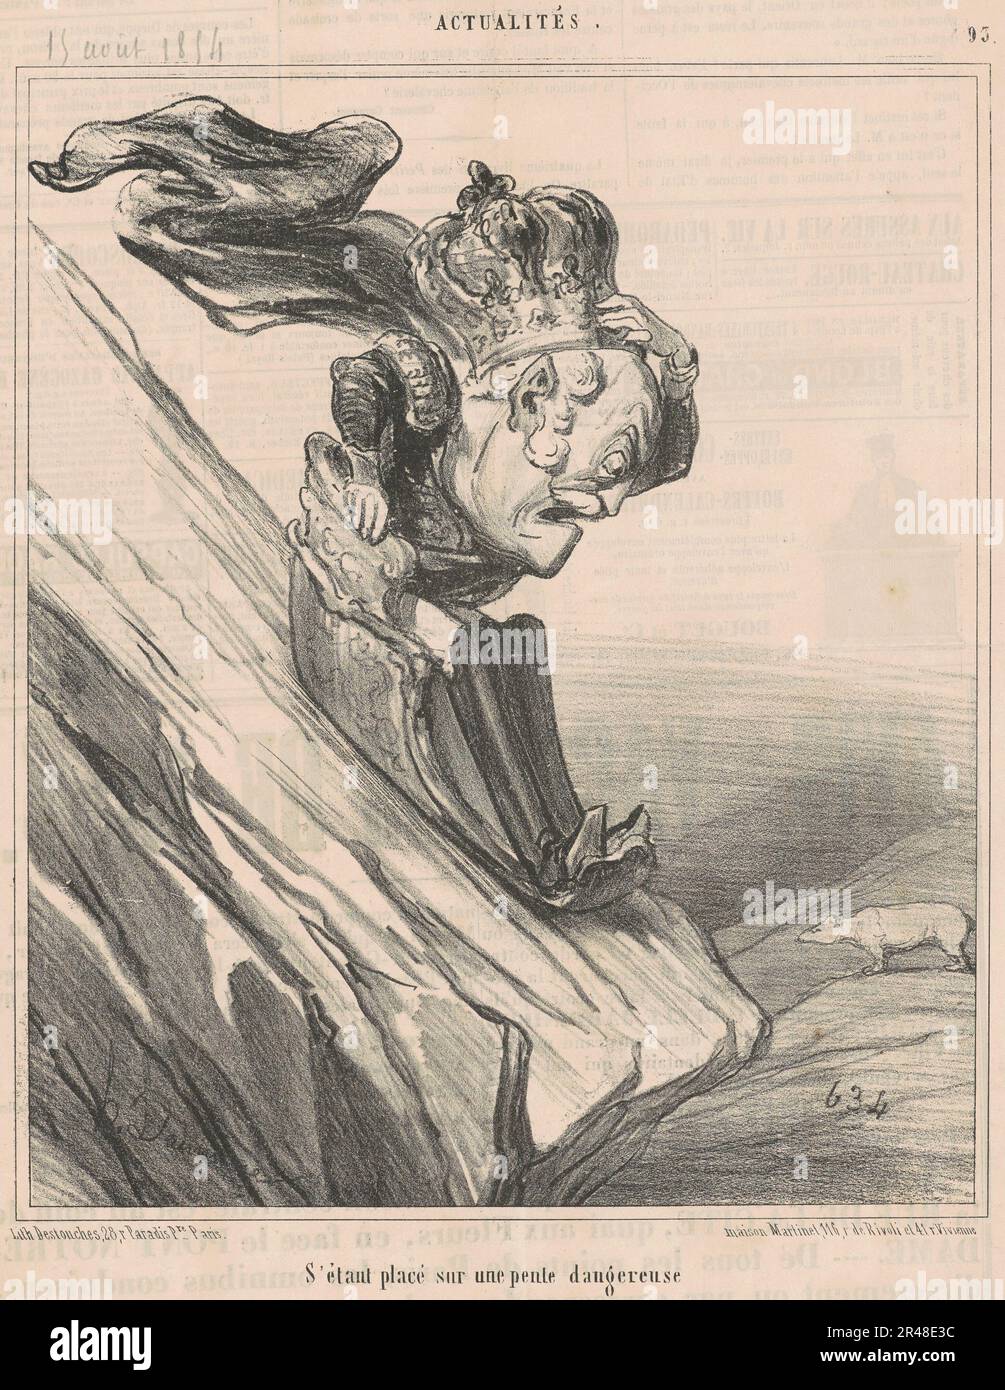 S'&#xe9;Tant&#xe9; sur une pente dangereuse, 19. Jahrhundert. Er begab sich auf eine gefährliche Hanglage. Stockfoto